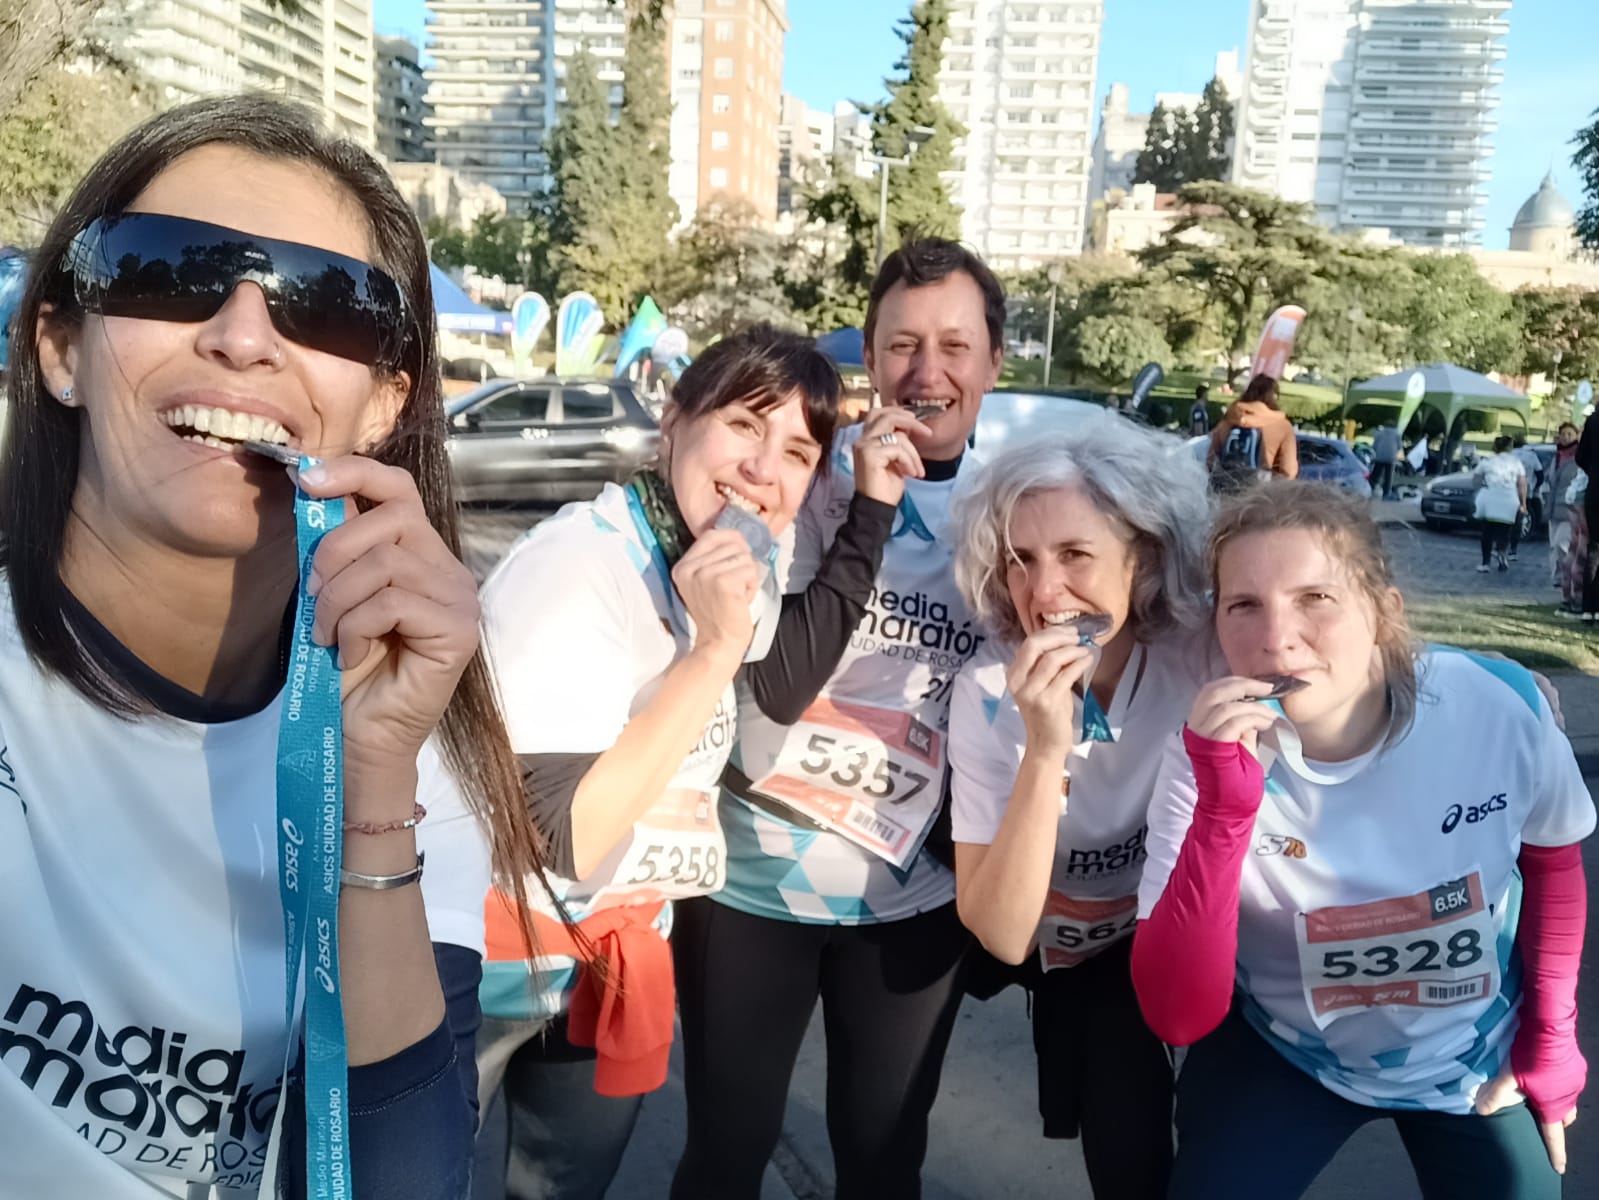 Bienestar en red Rosario Maraton1